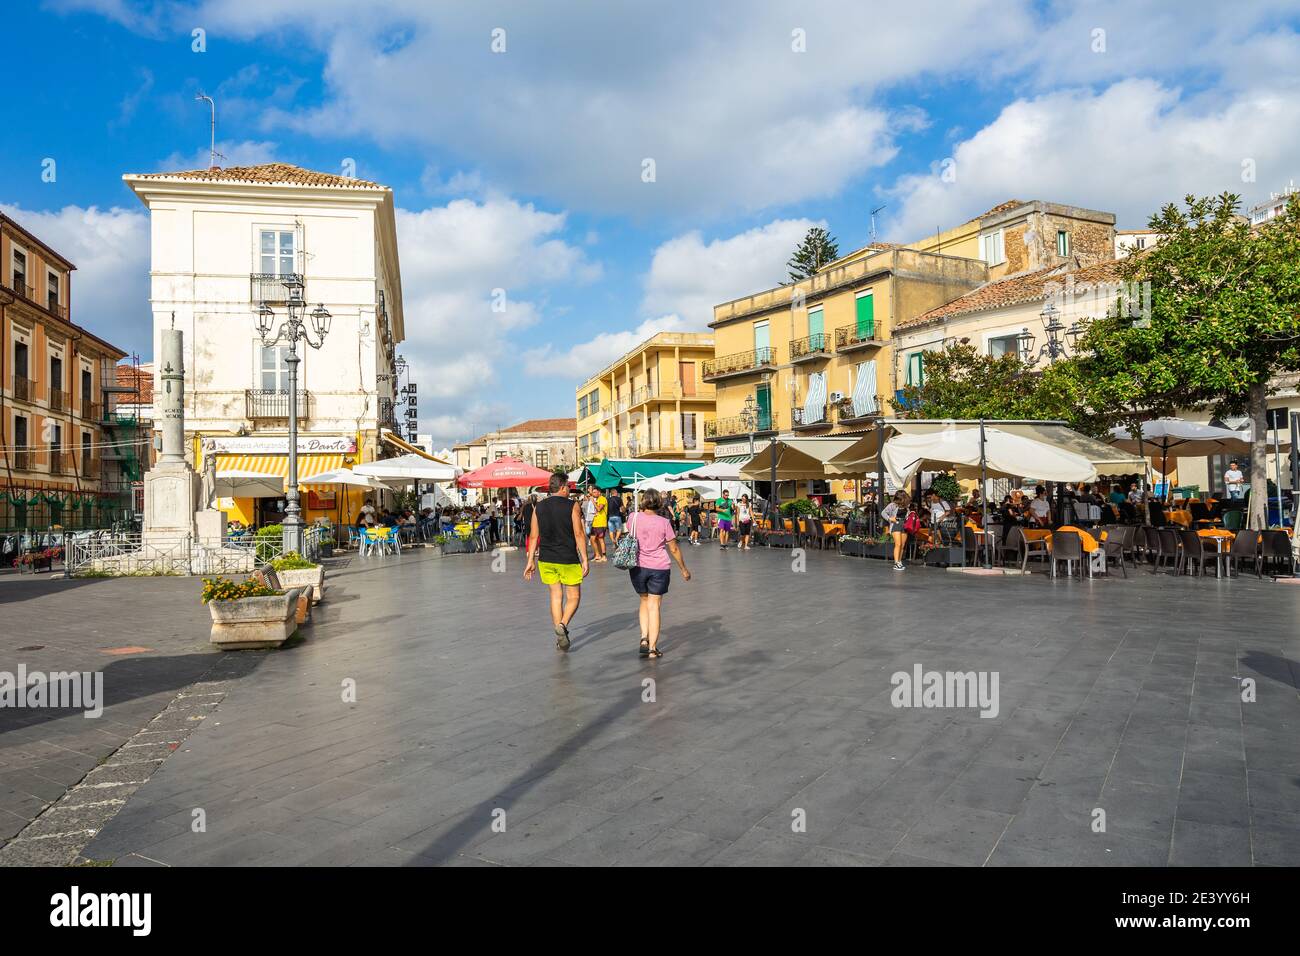 Pizzo, Calabre, Italie, août 2020 – touristes sur la place principale de Pizzo, plein de bars et restaurants pendant la saison estivale Banque D'Images